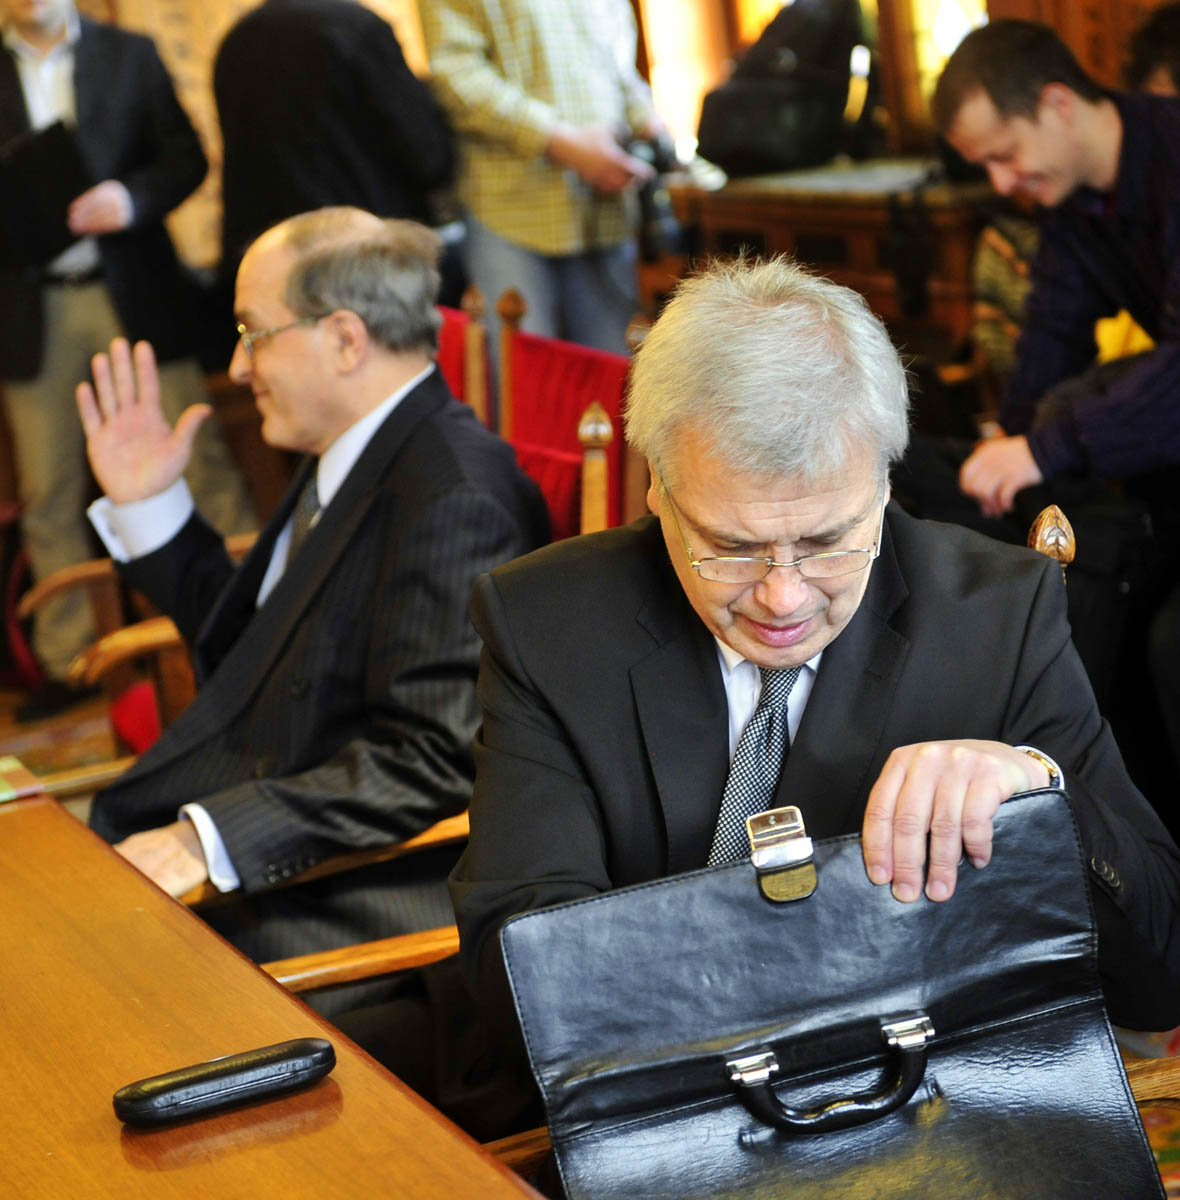 Cinkotai János és Kocziszky György, a tanács két külsős tagja múlt év márciusában parlamenti meghallgatásukkor. Egy véleményen vannak